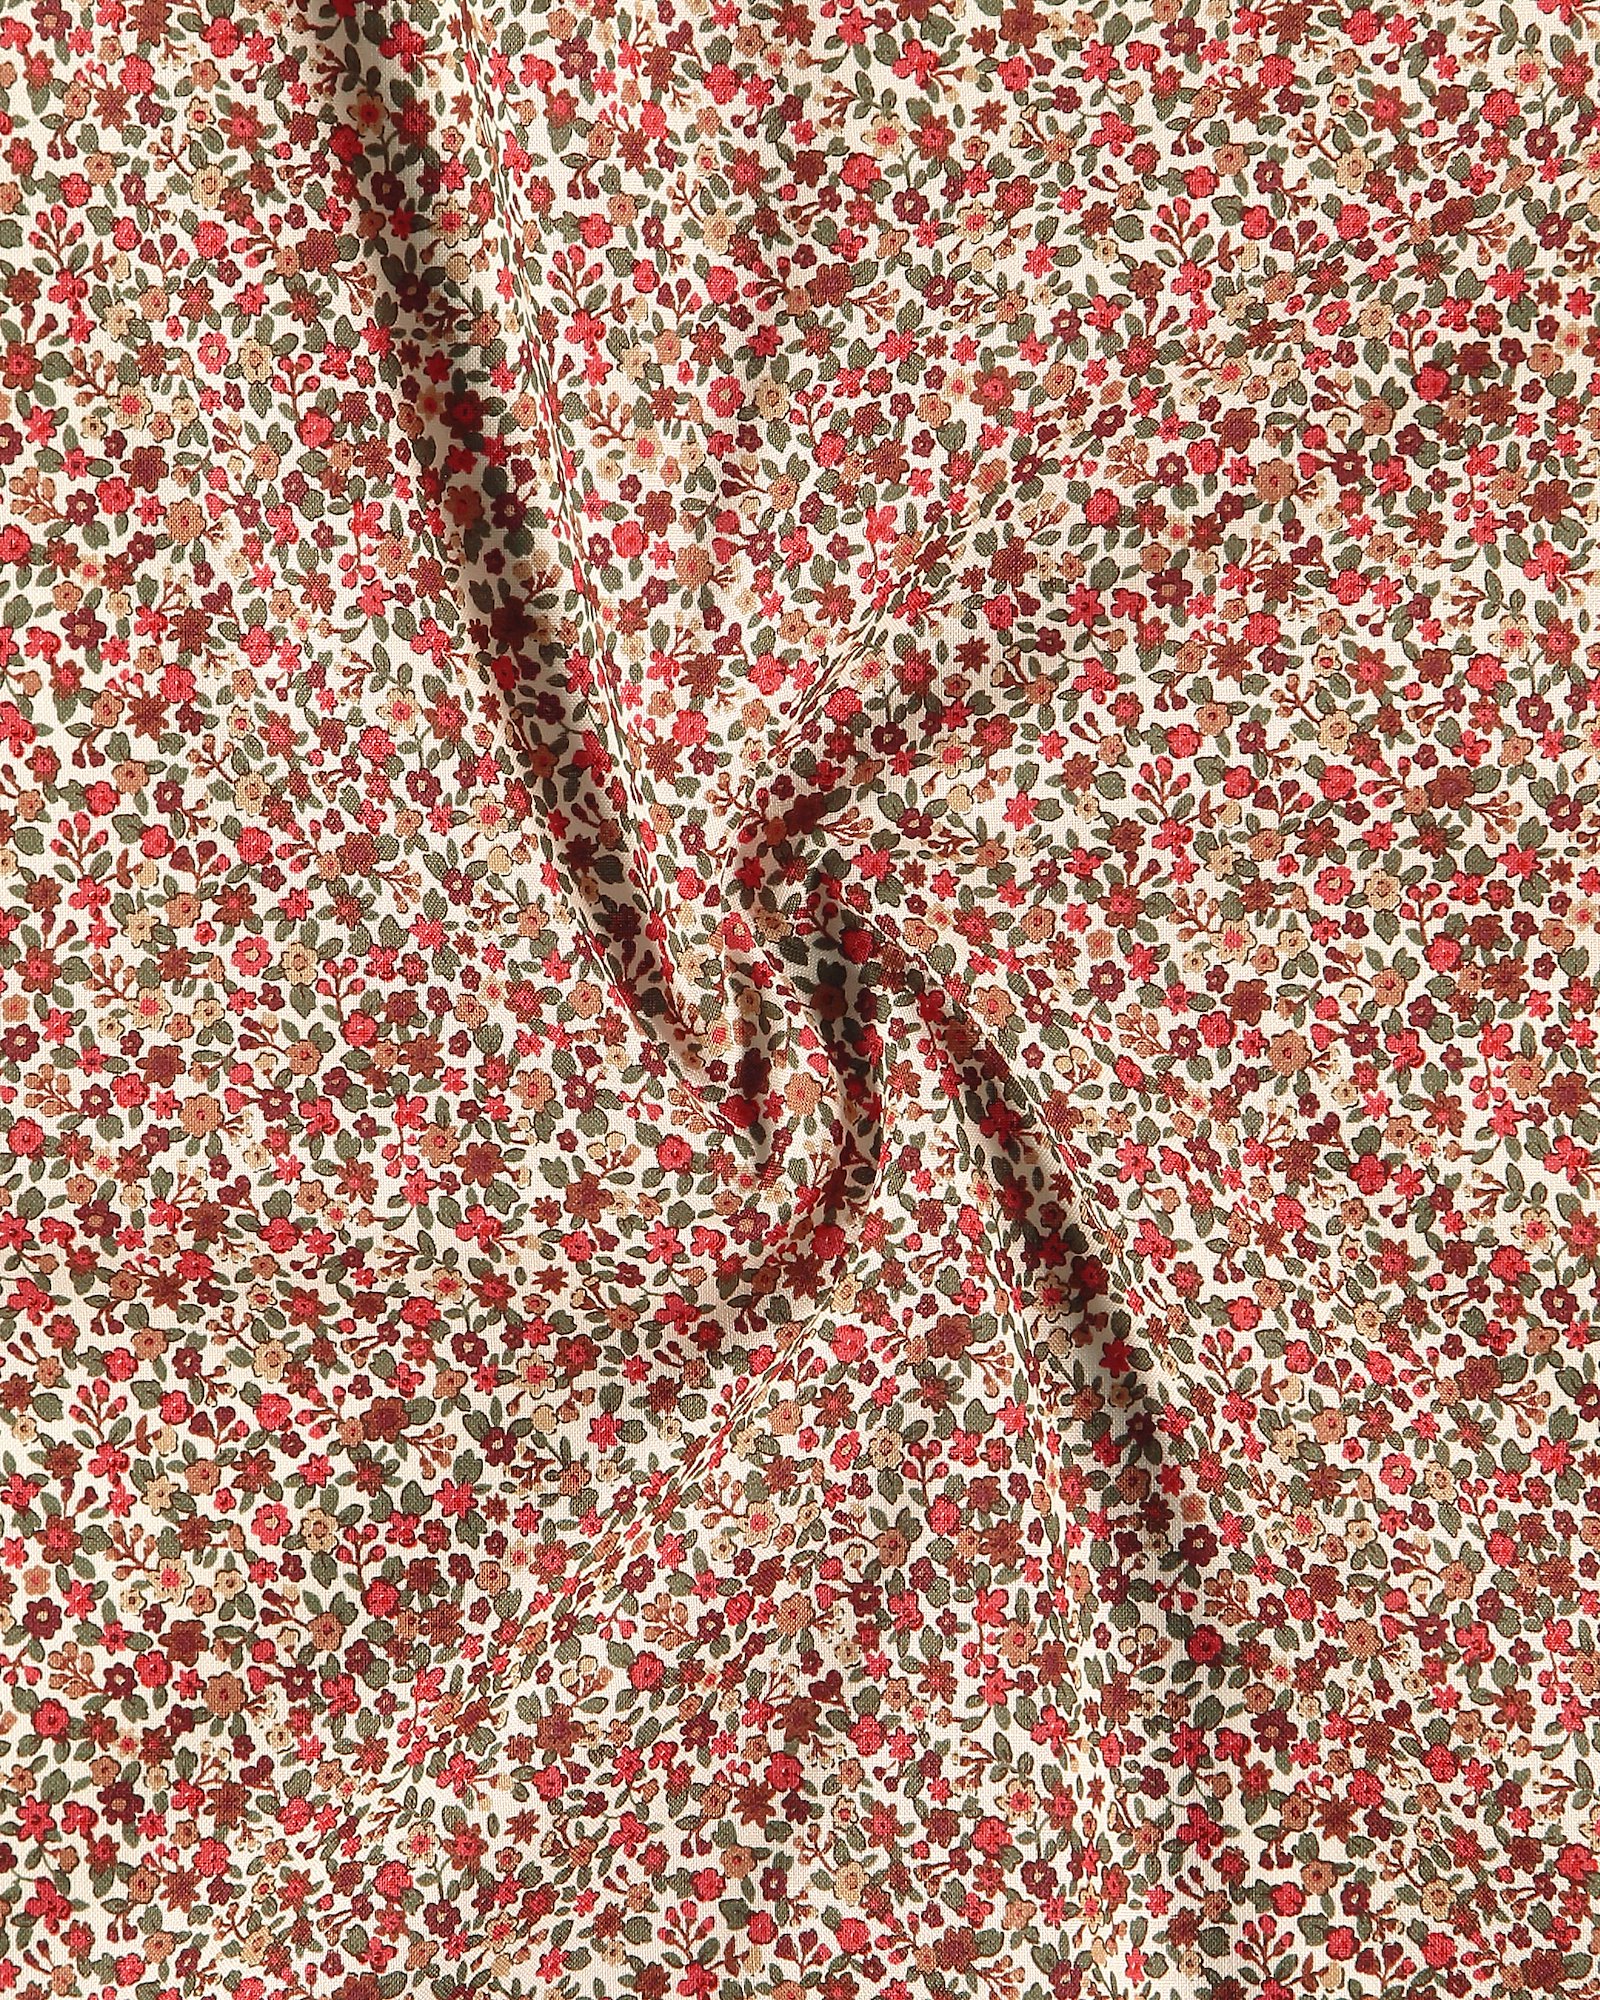 Bomull pastell puder med röda blommor 852443_pack